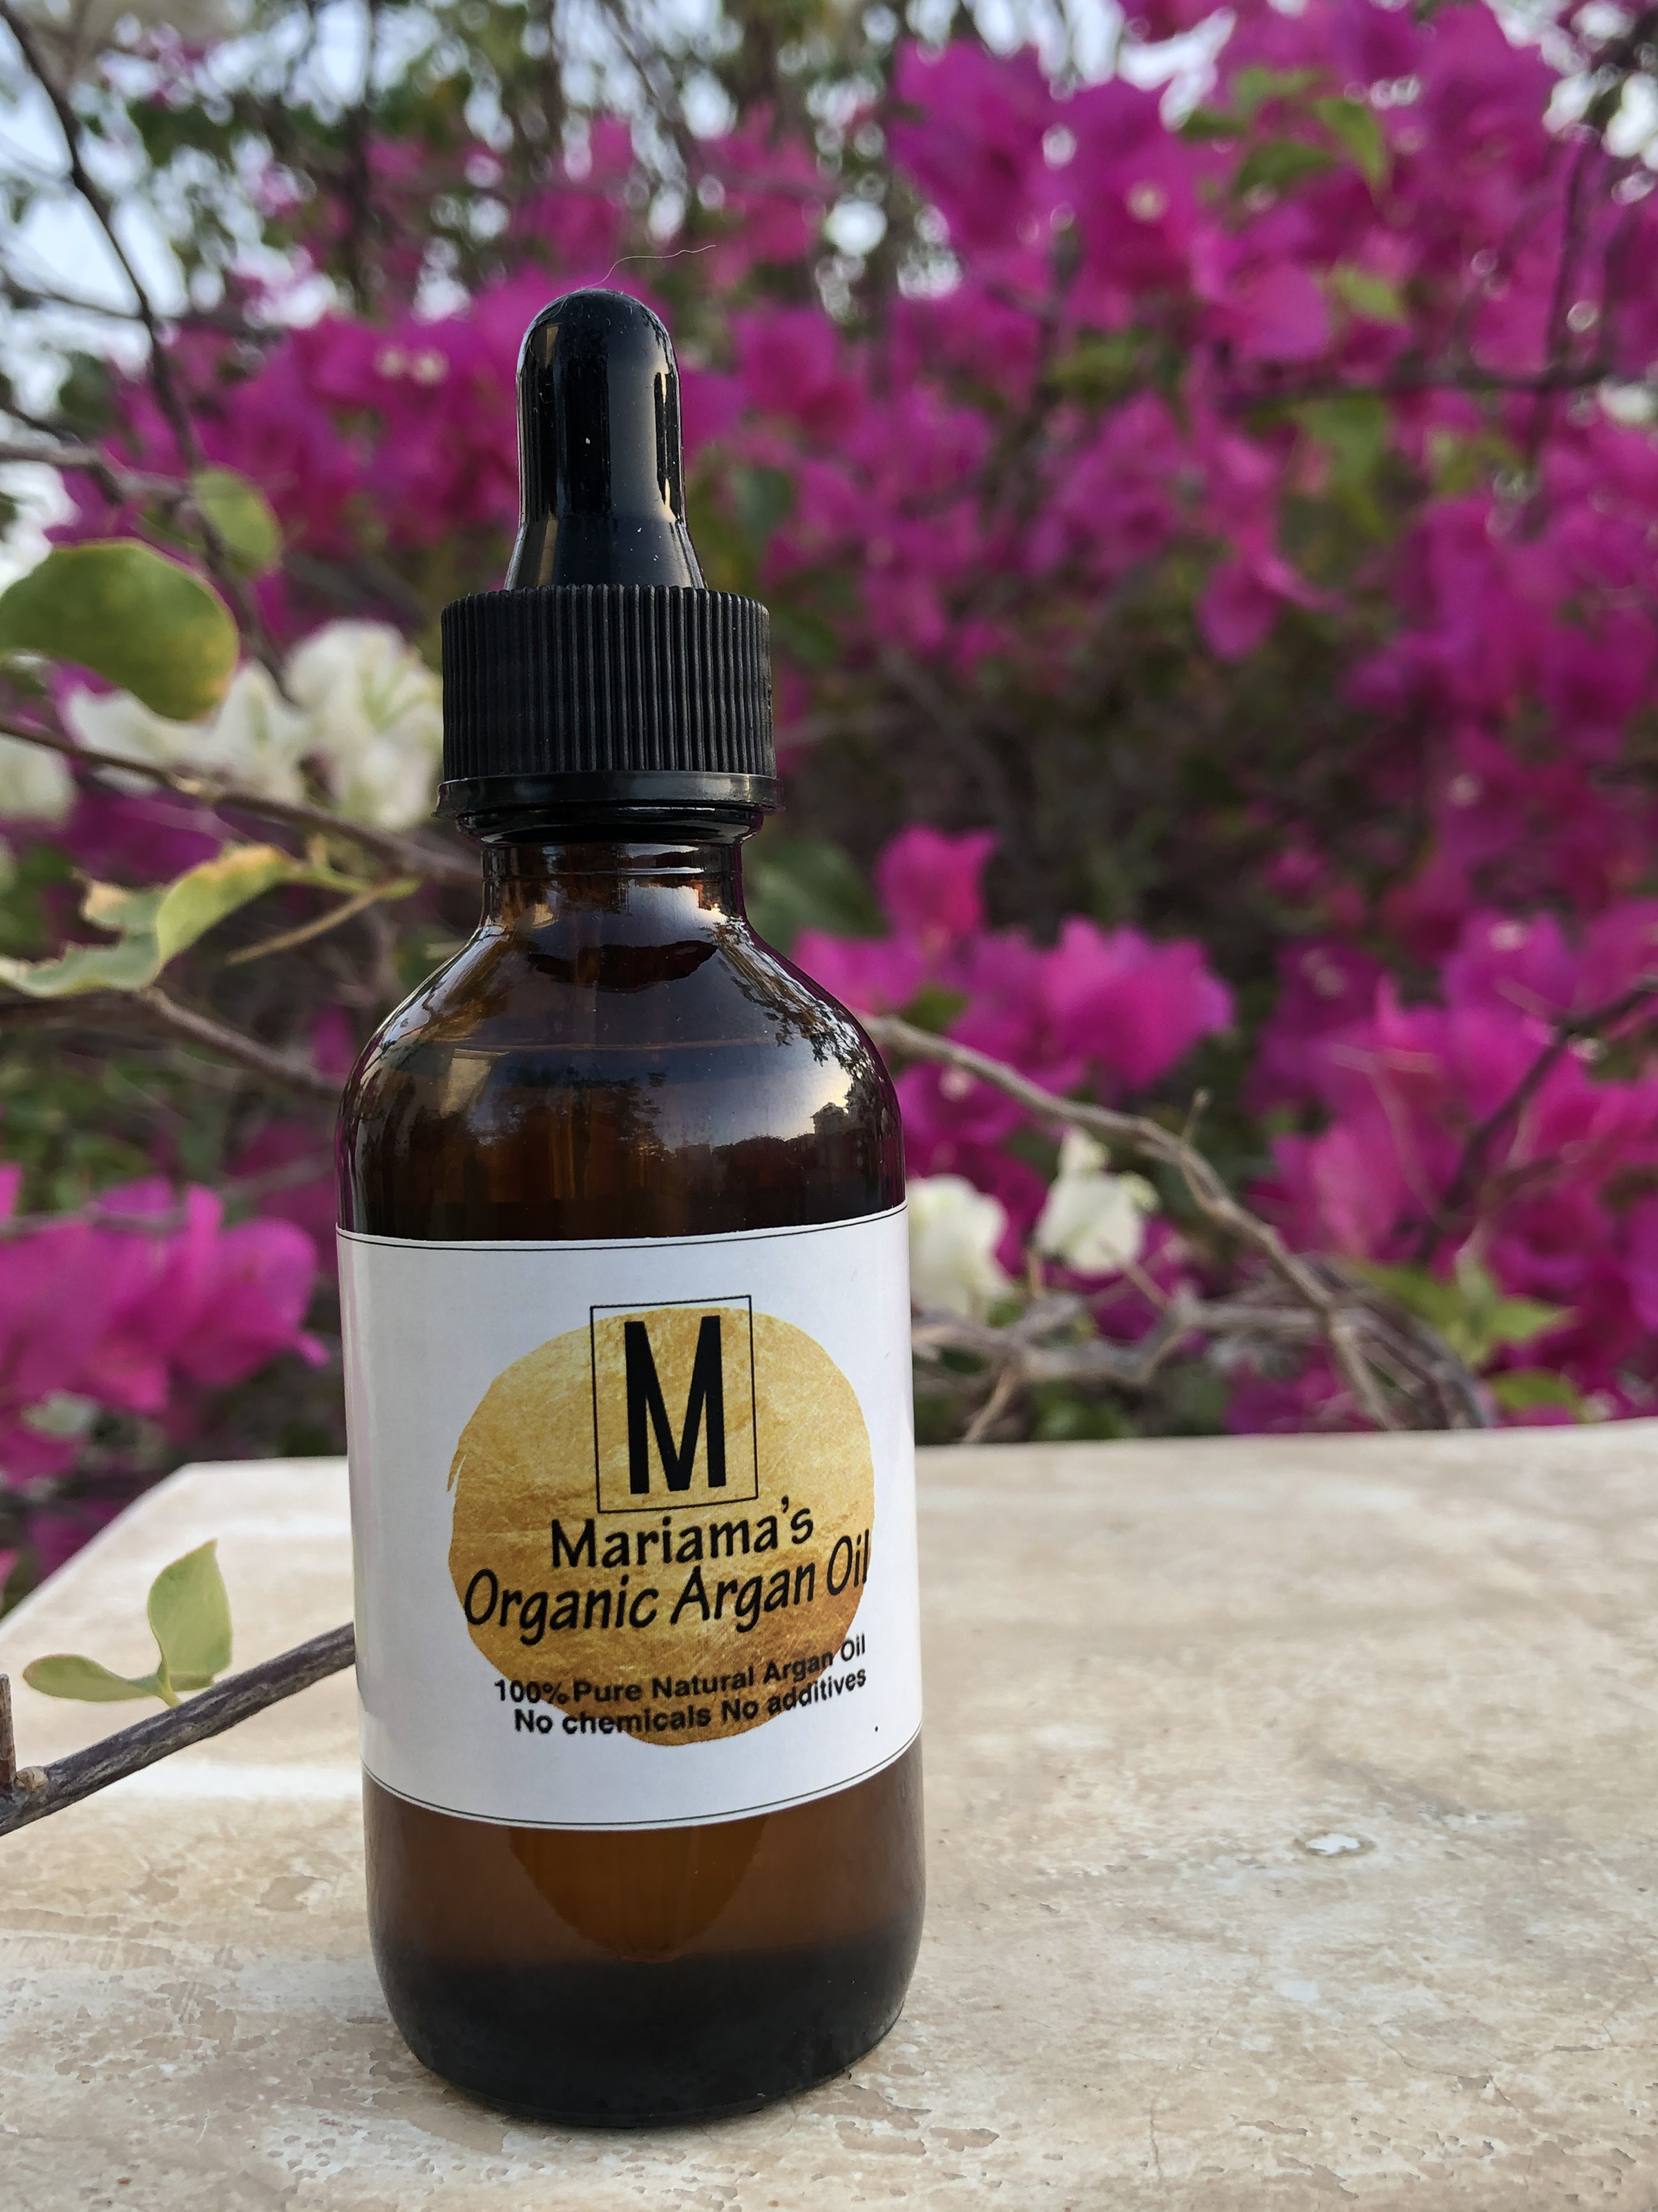 Mariama's Organic Argan Oil